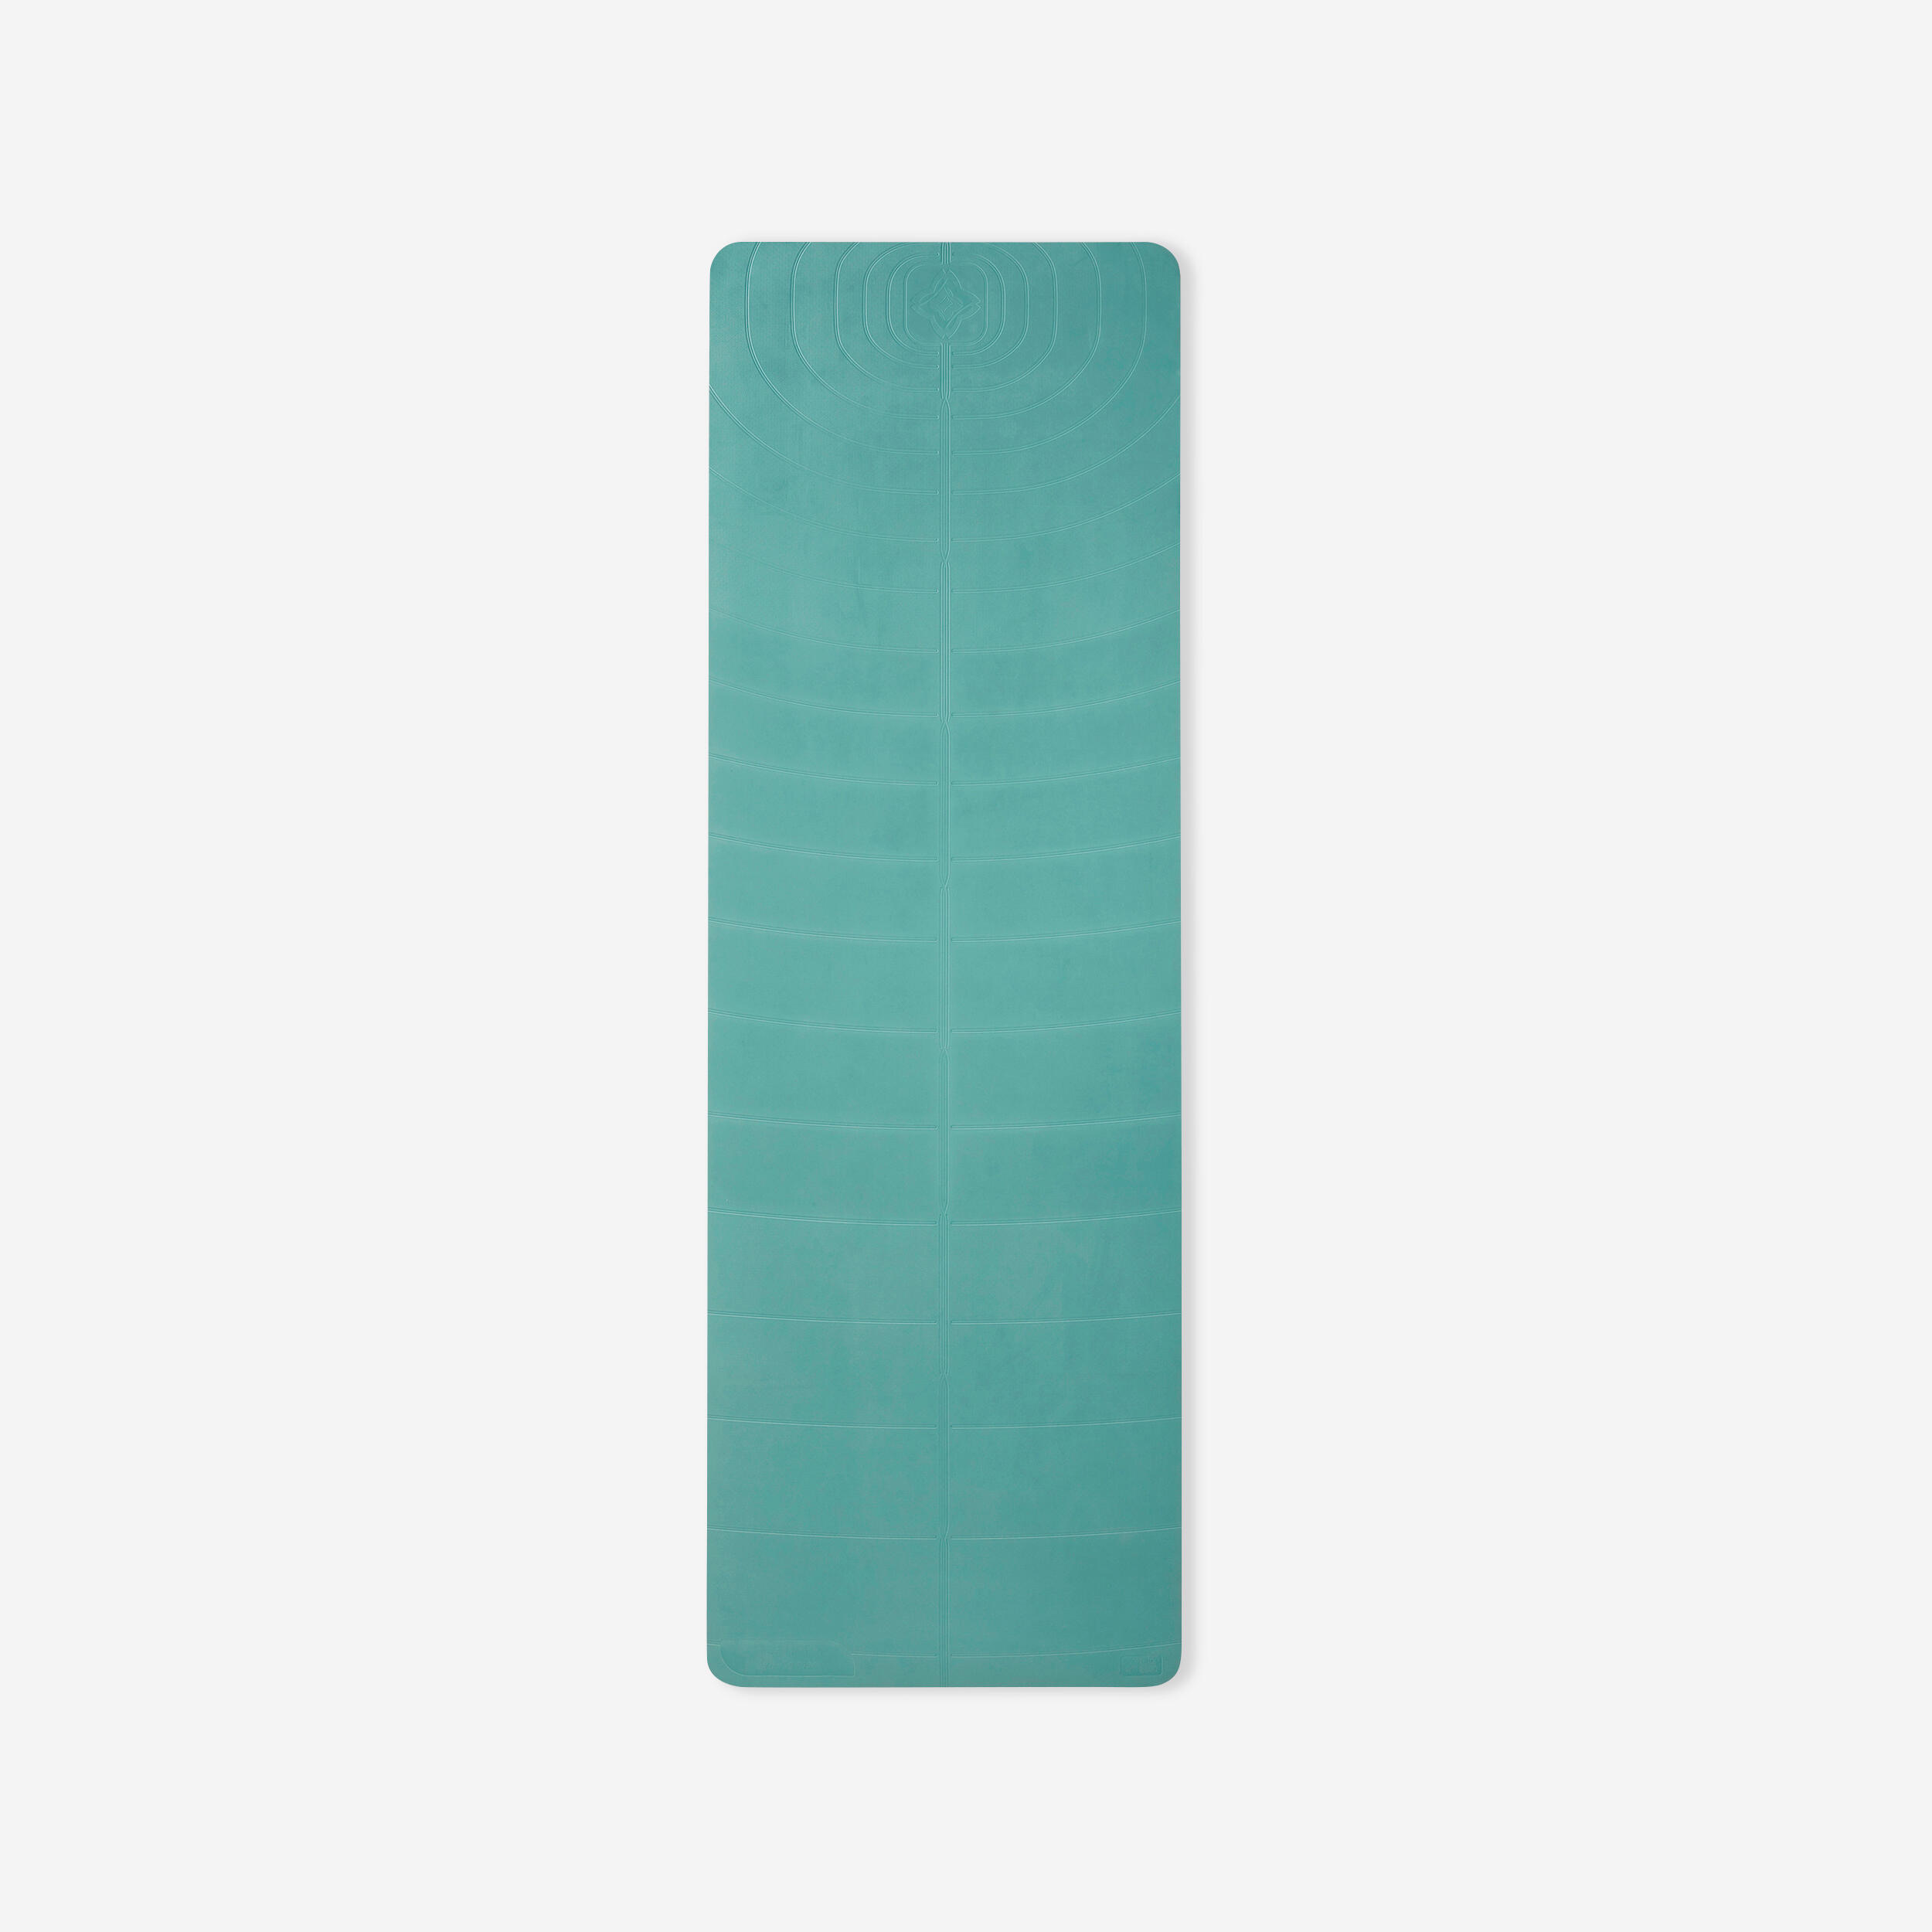 Saltea XL Yoga Ușoară 5 mm Verde CARDIO